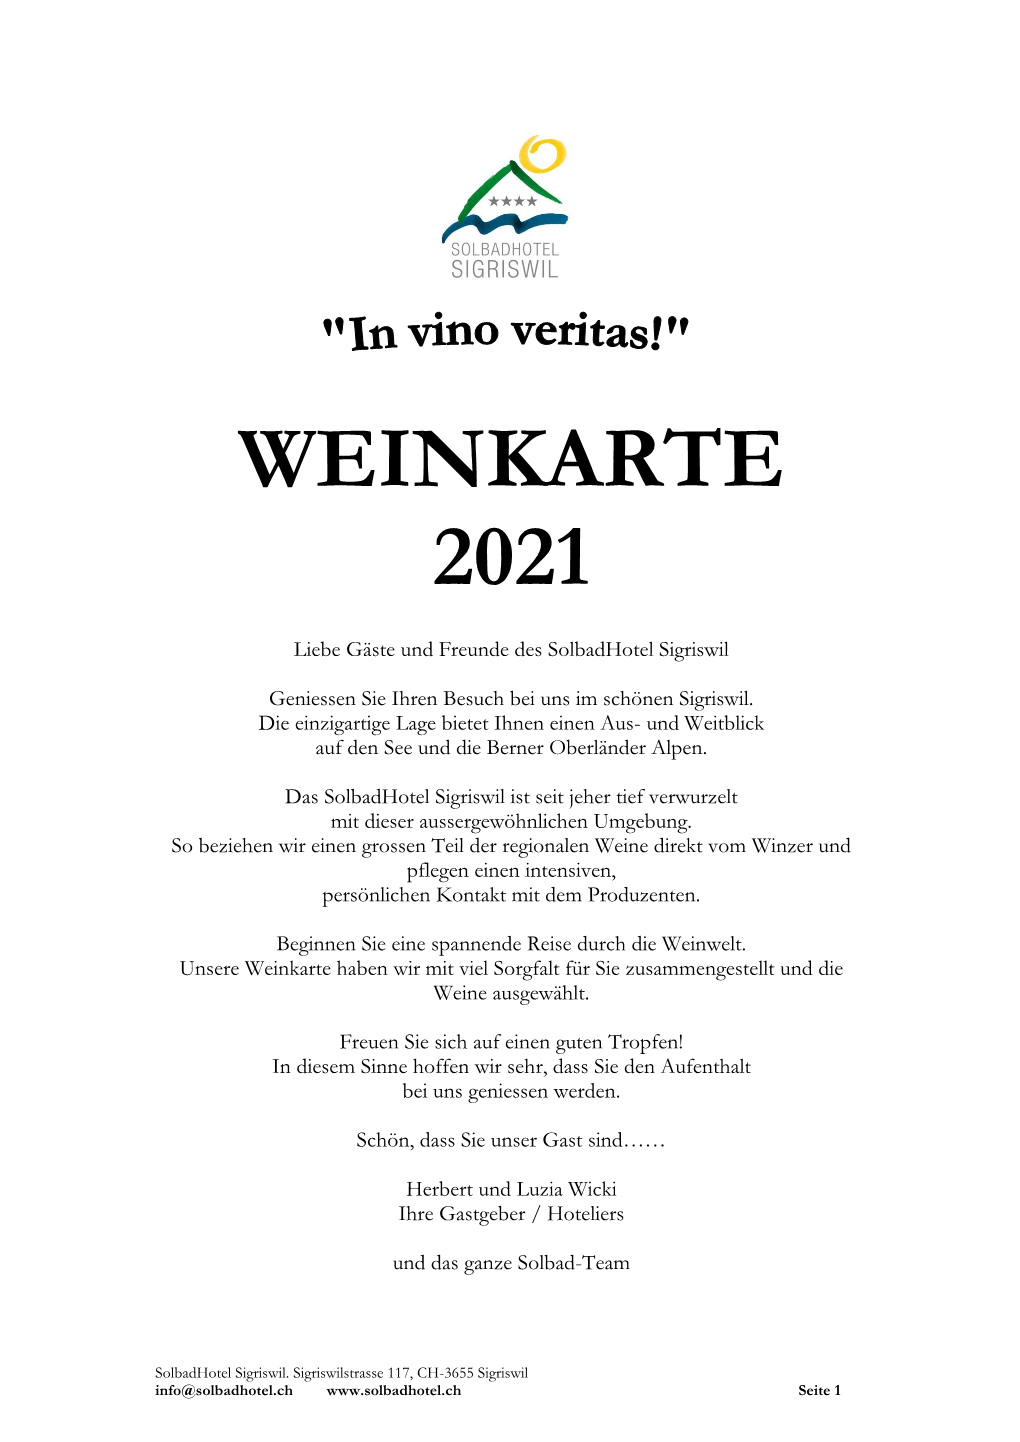 Weinkarte 2021